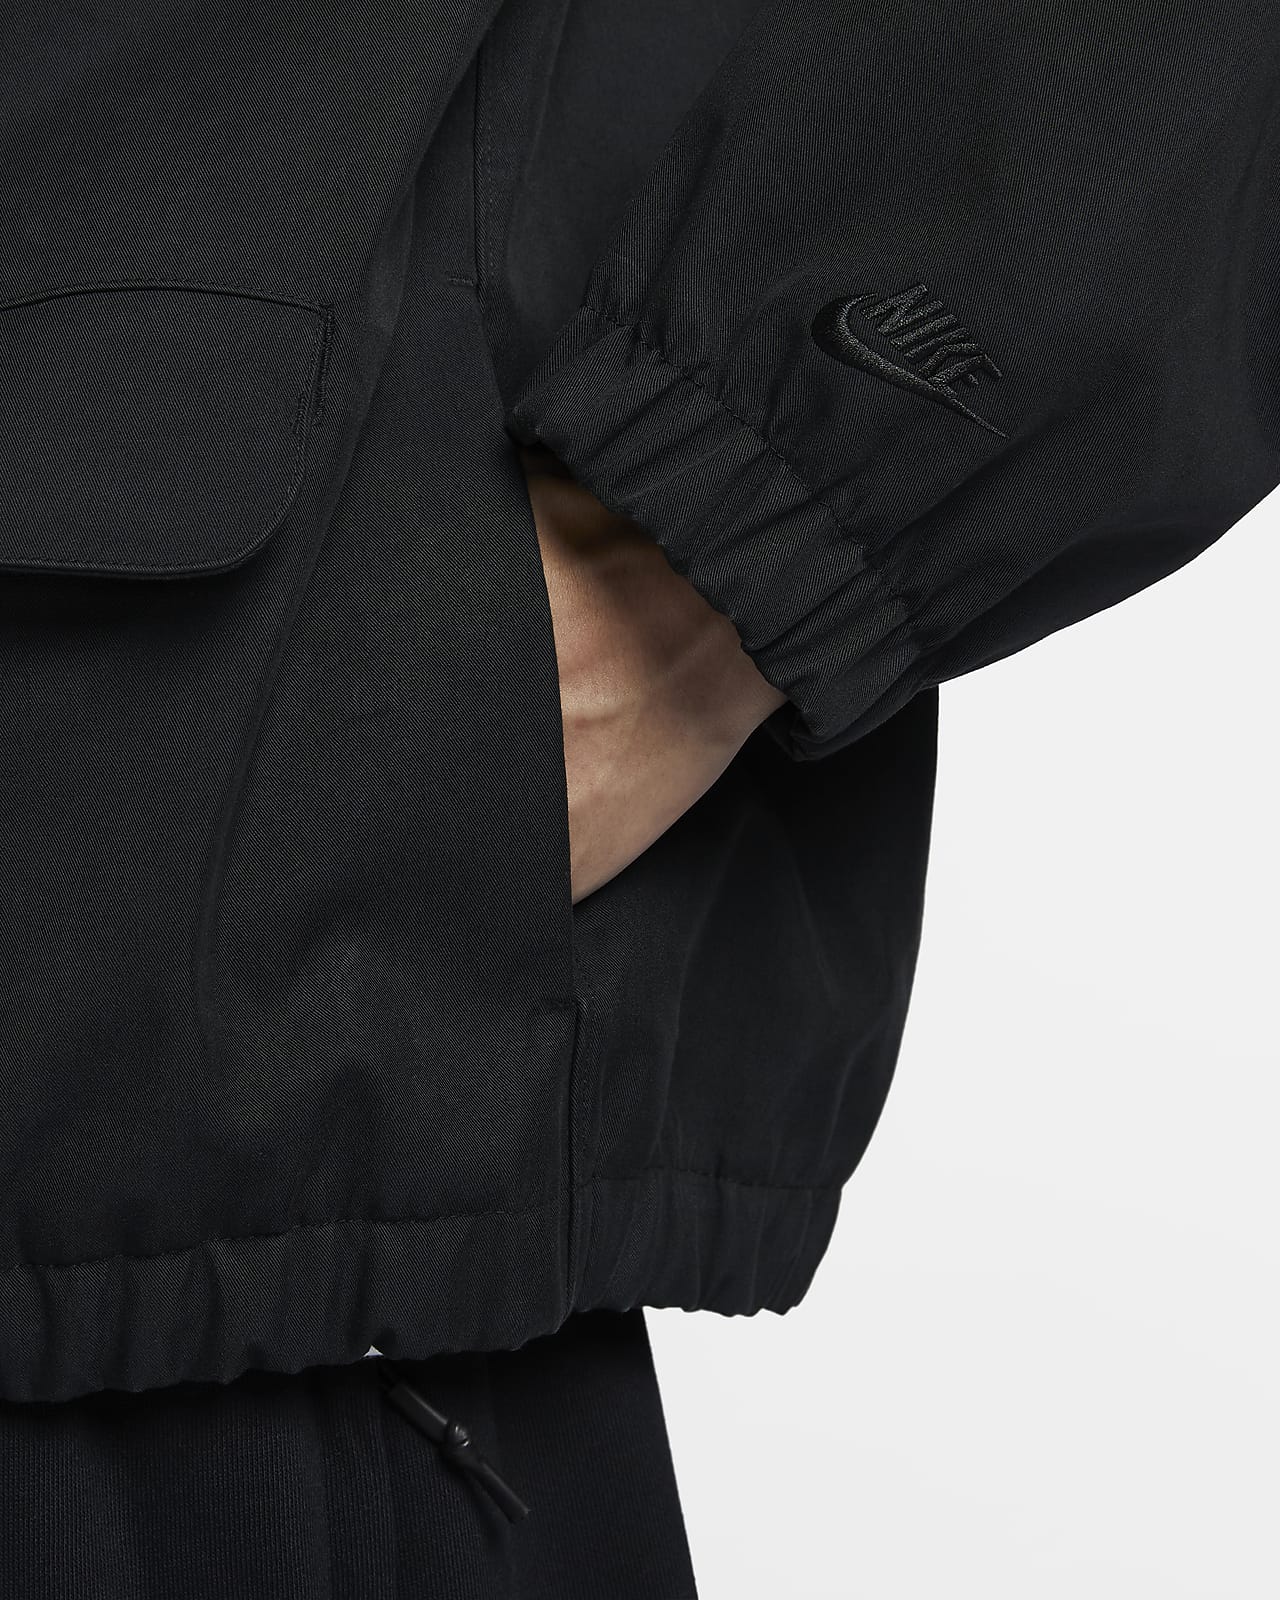 Nike Sportswear Tech Pack Men's Storm-FIT Cotton Jacket